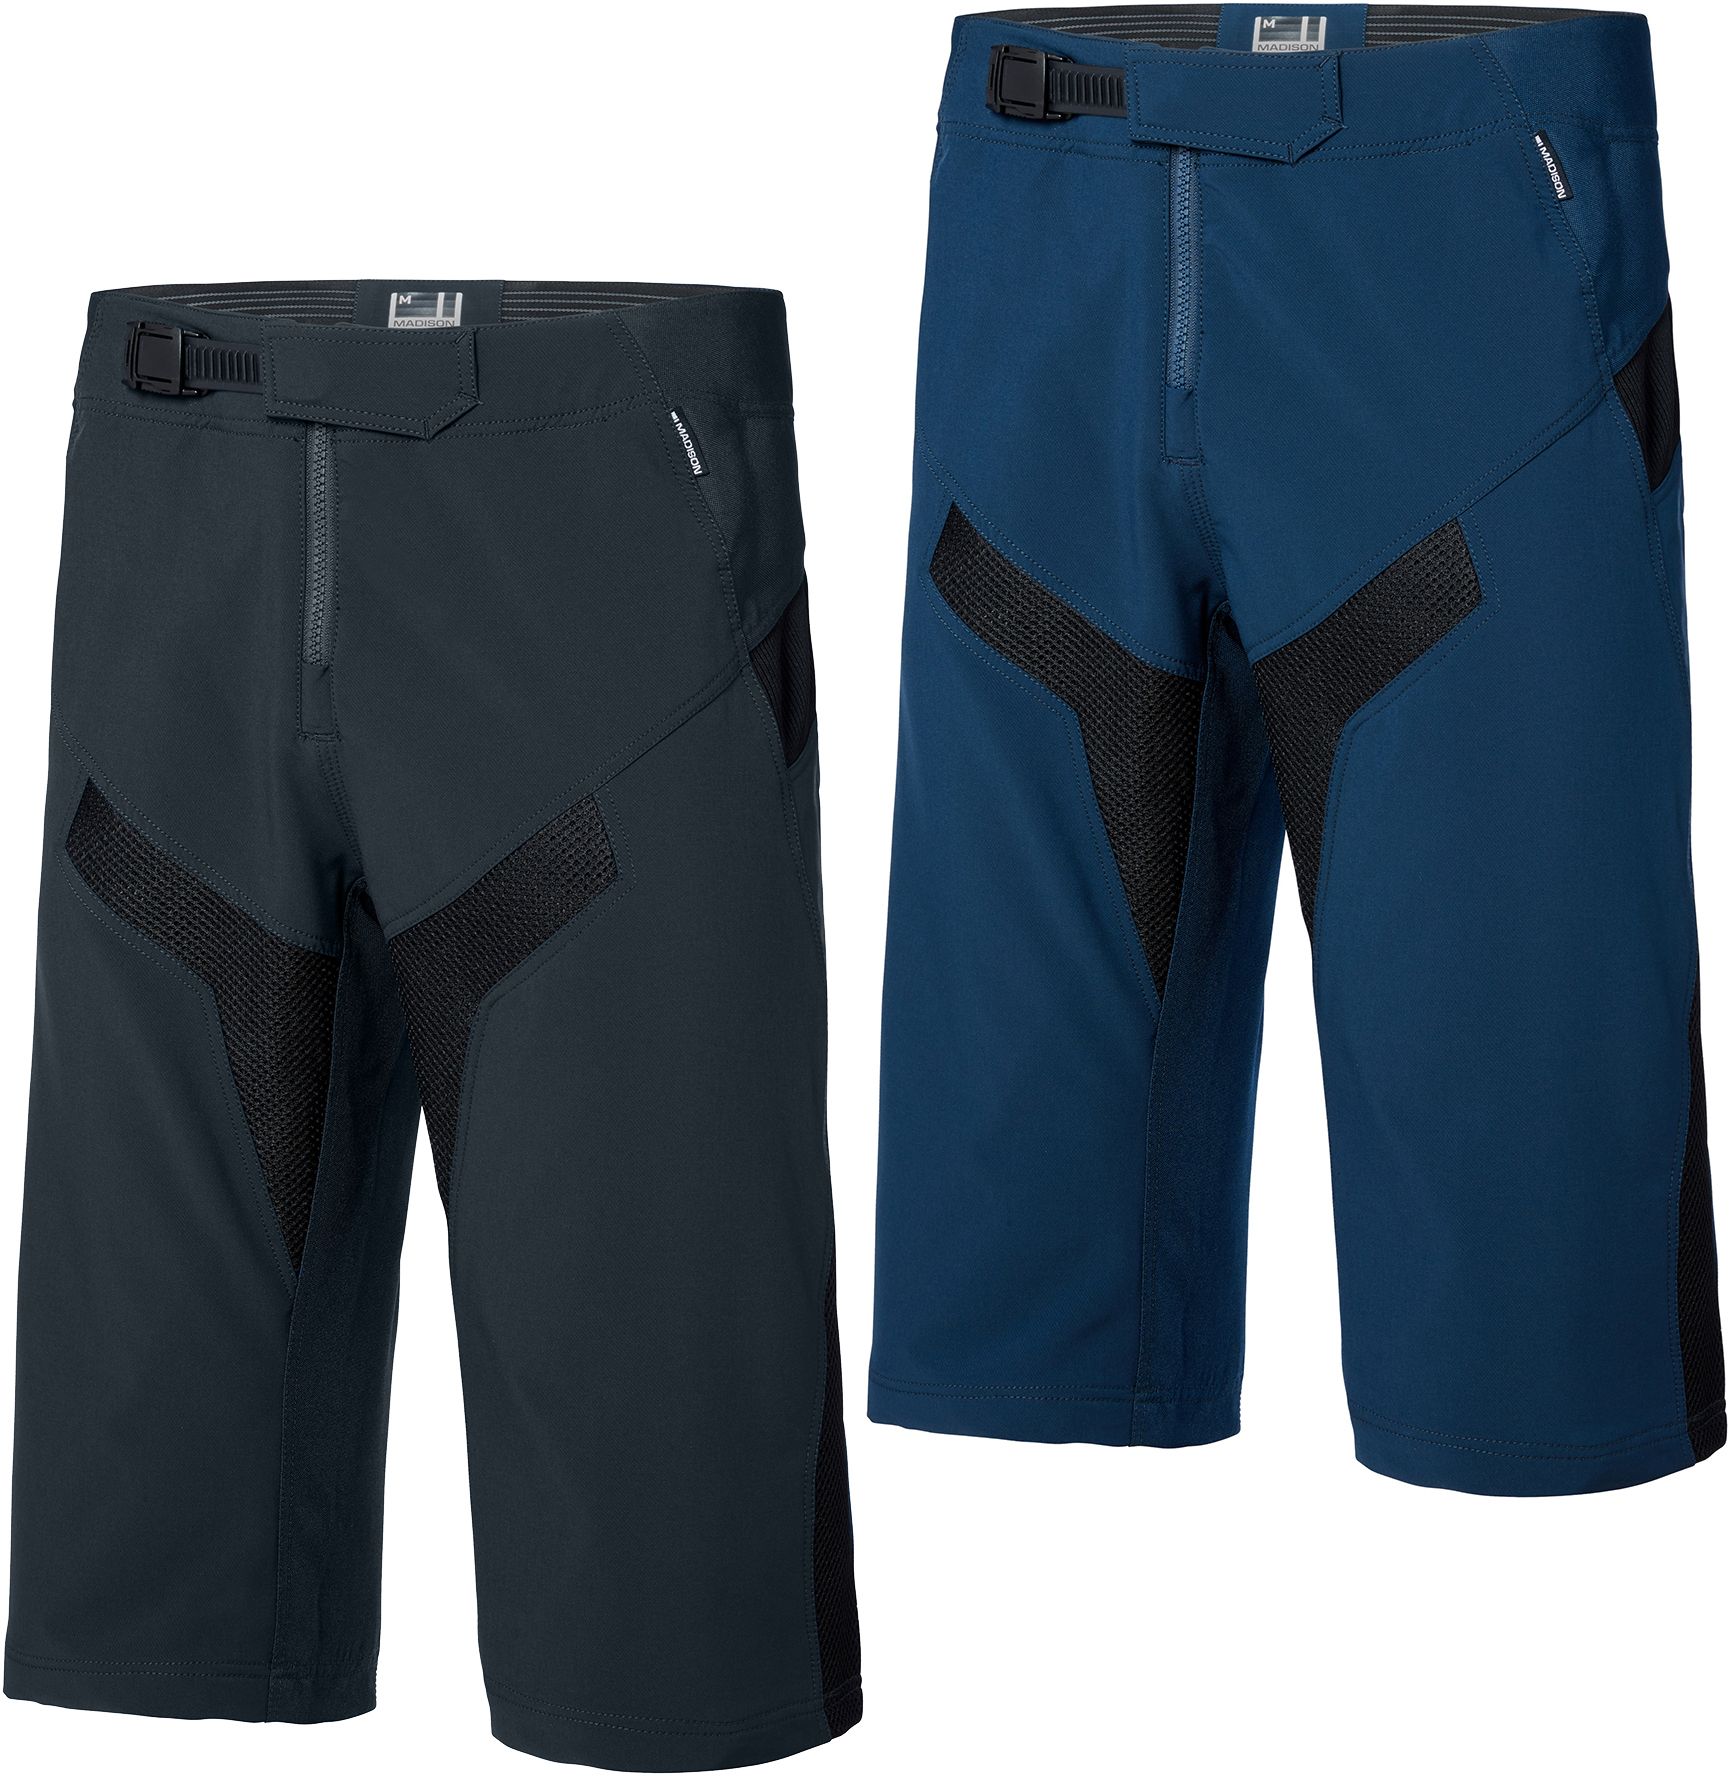 Madison Alpine Mtb Dwr Shorts Large Black - £19.99 | Shorts - Baggy ...